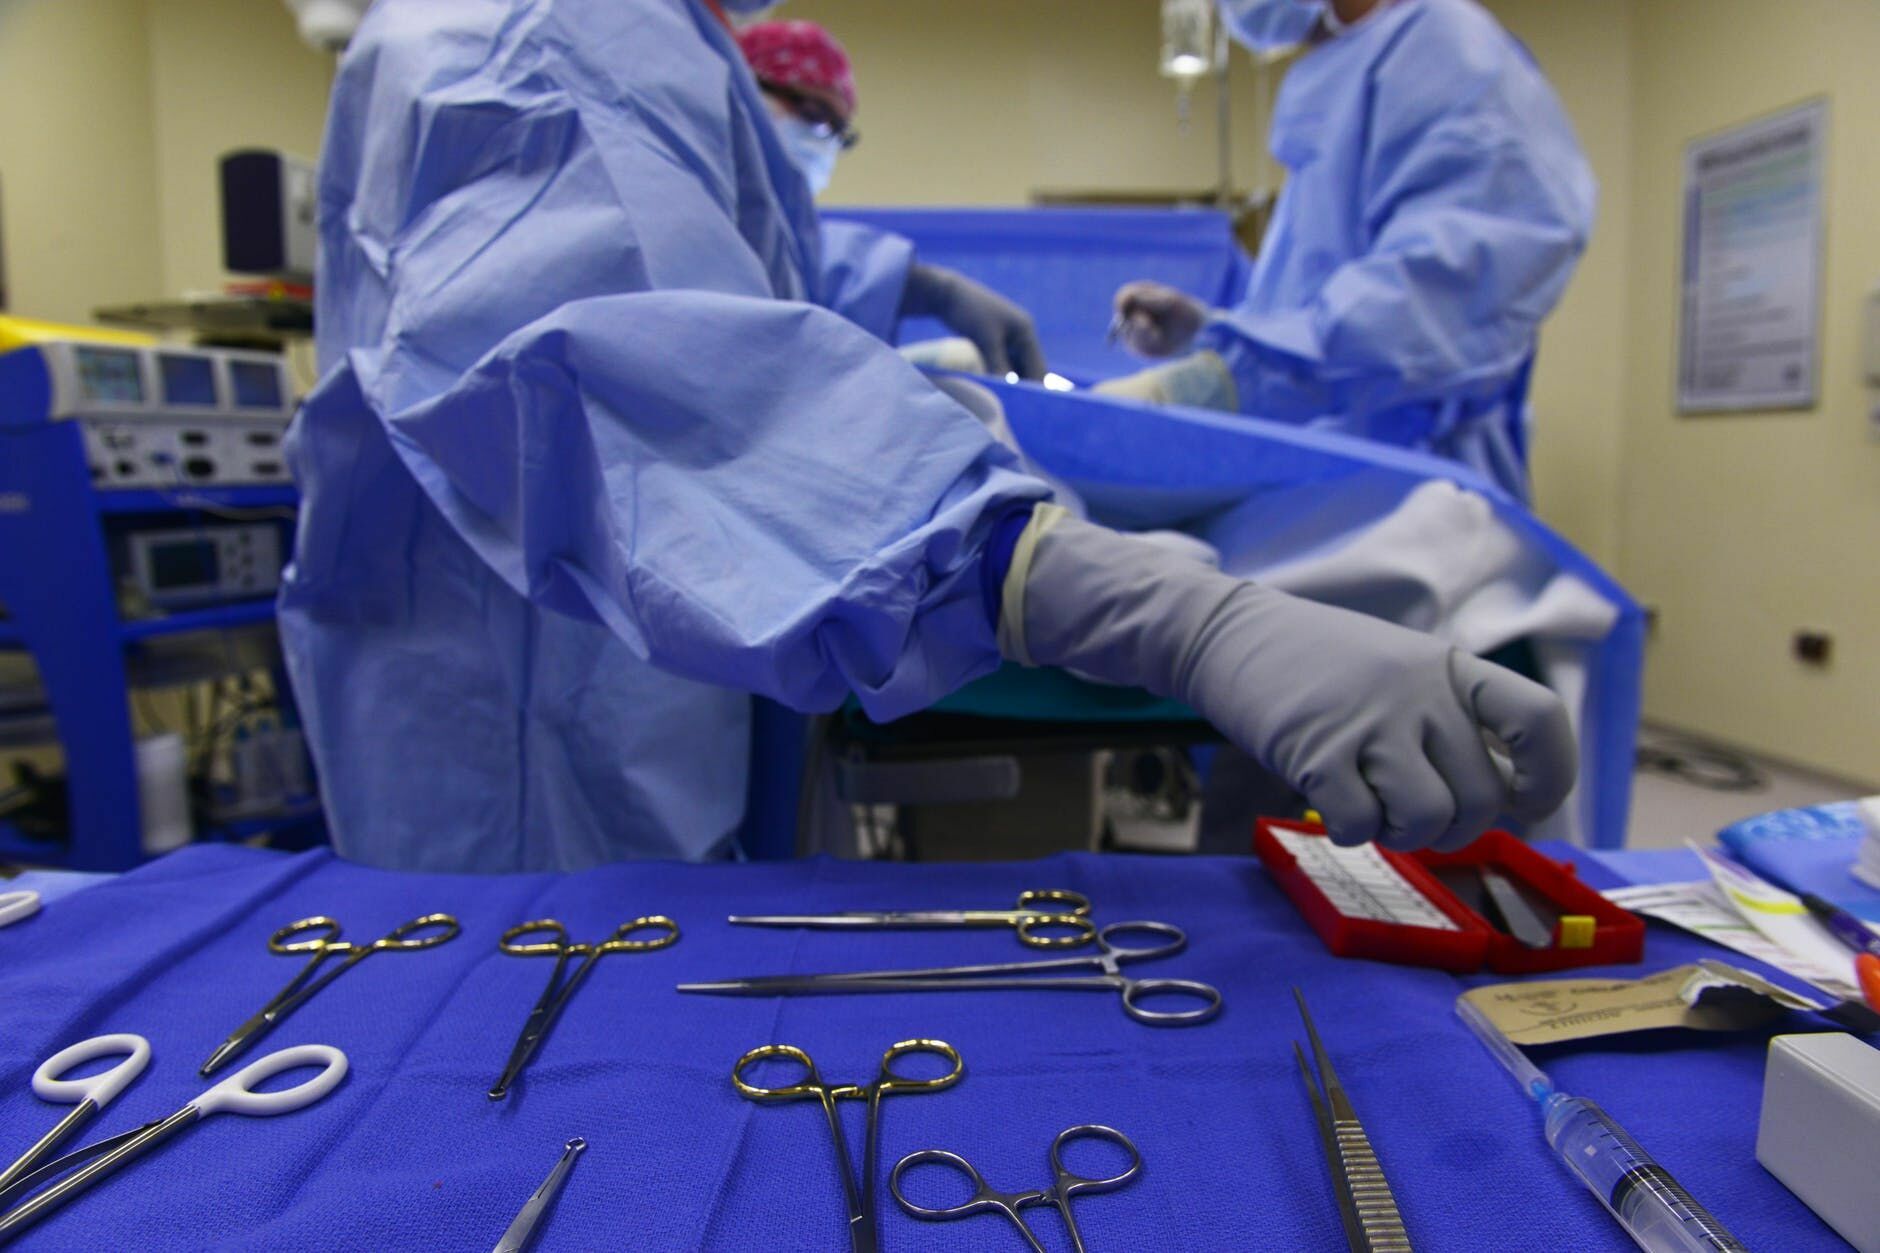 Два года ждать: в Минздраве обещают переход к справедливой оплате труда врачей